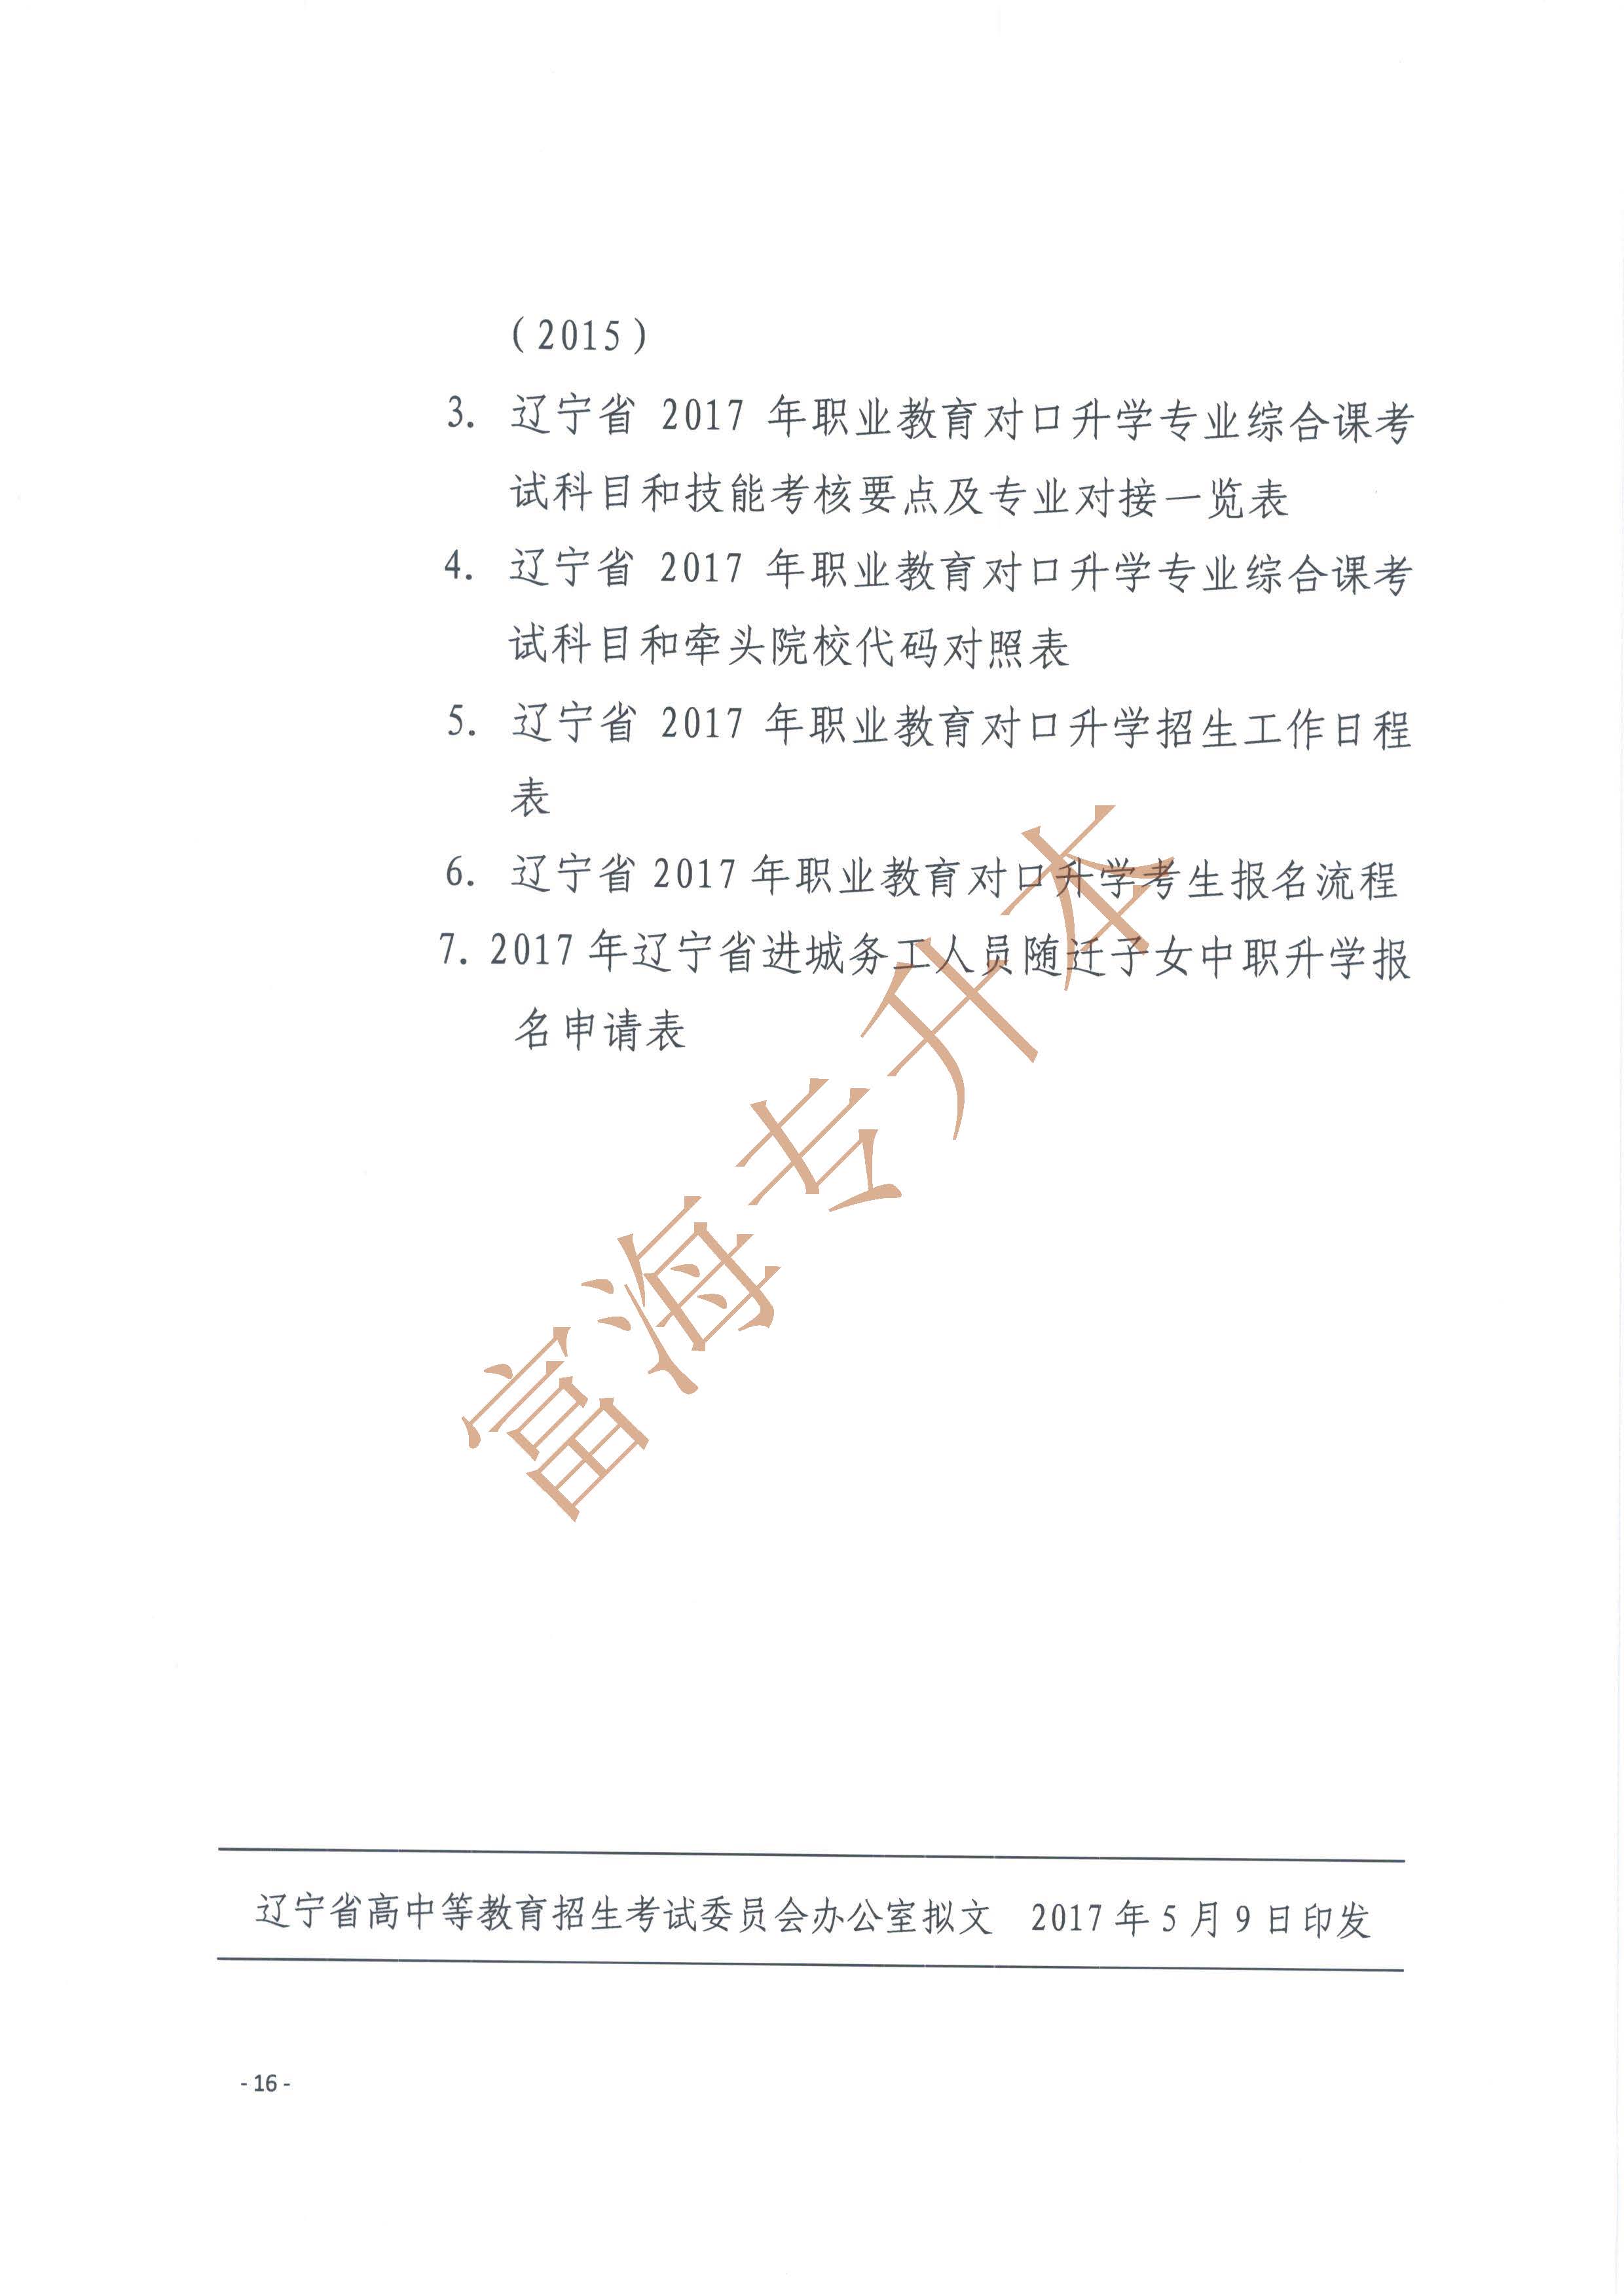 辽宁省2017年职业教育对口升学考试招生工作实施办法的通知16